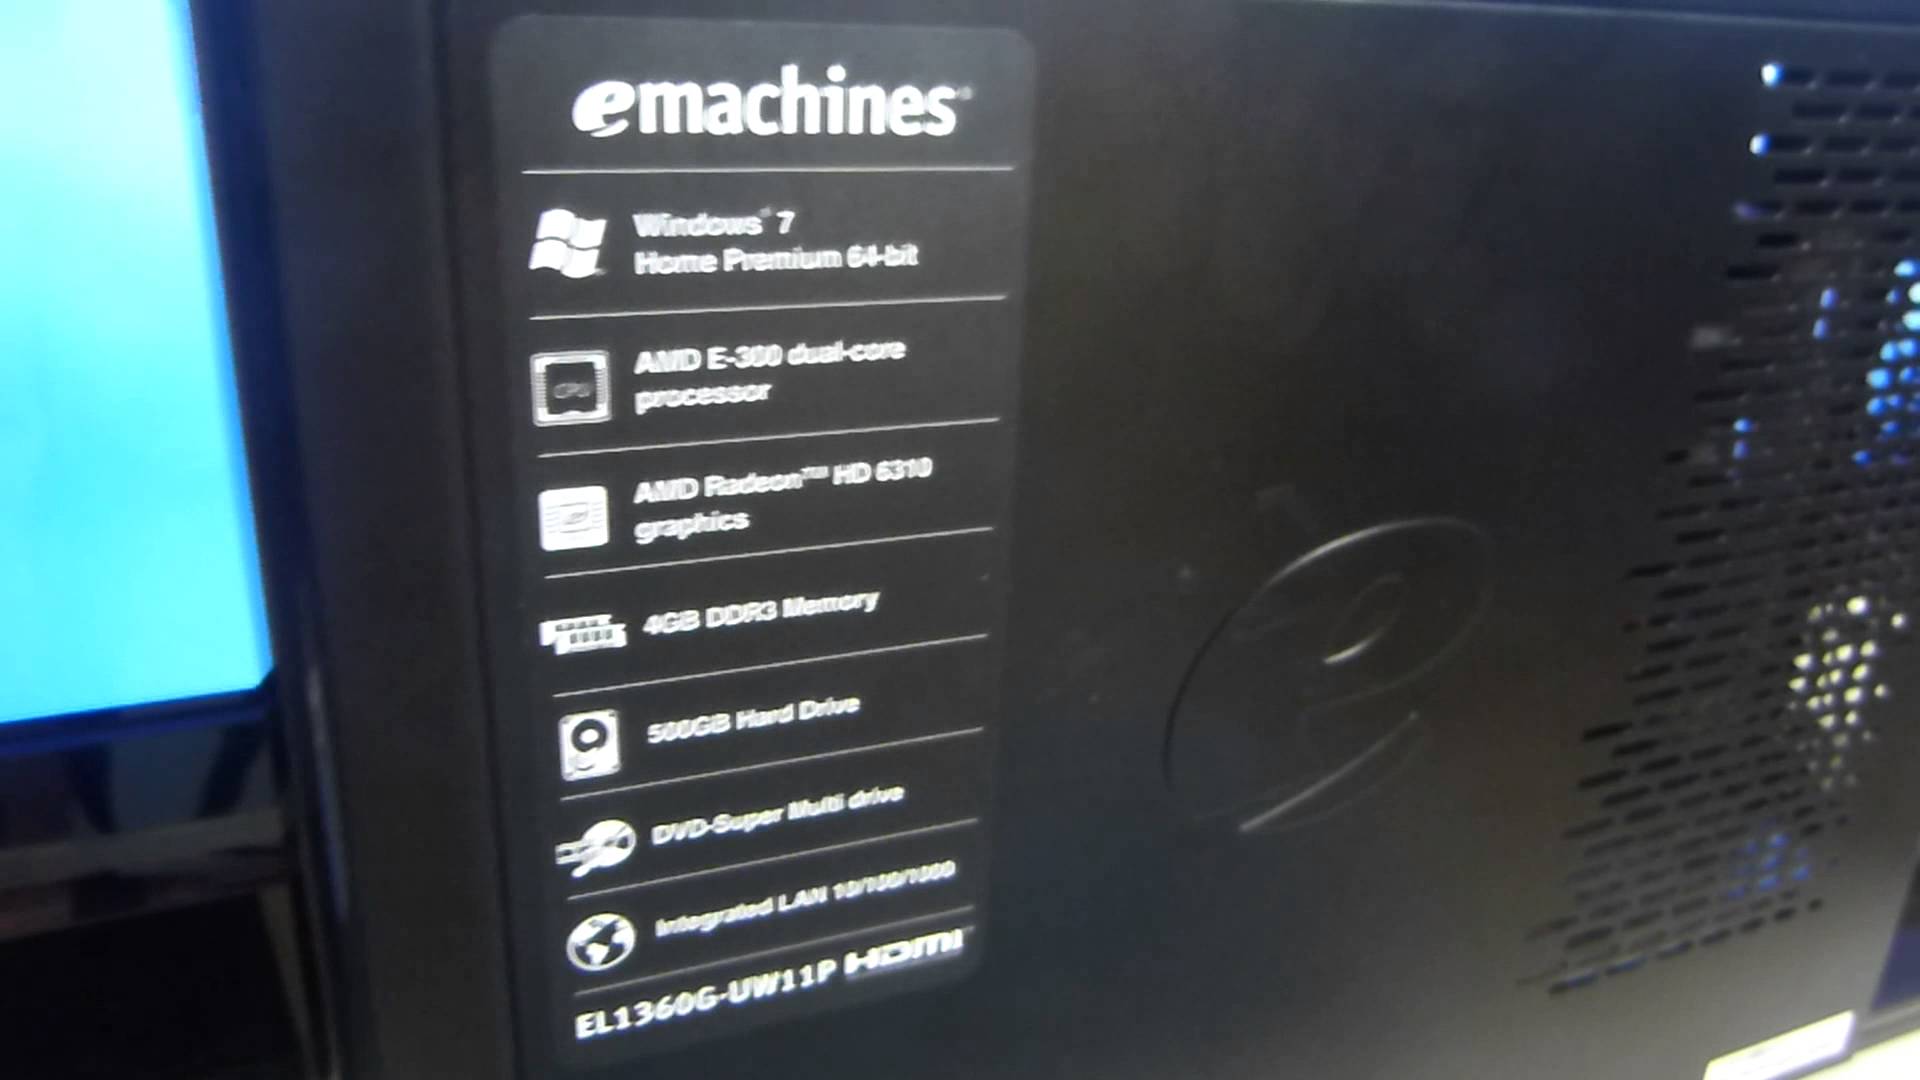 EMachines EL1360G AMD E 300 1.30GHz 4GB 500GB - YouTube